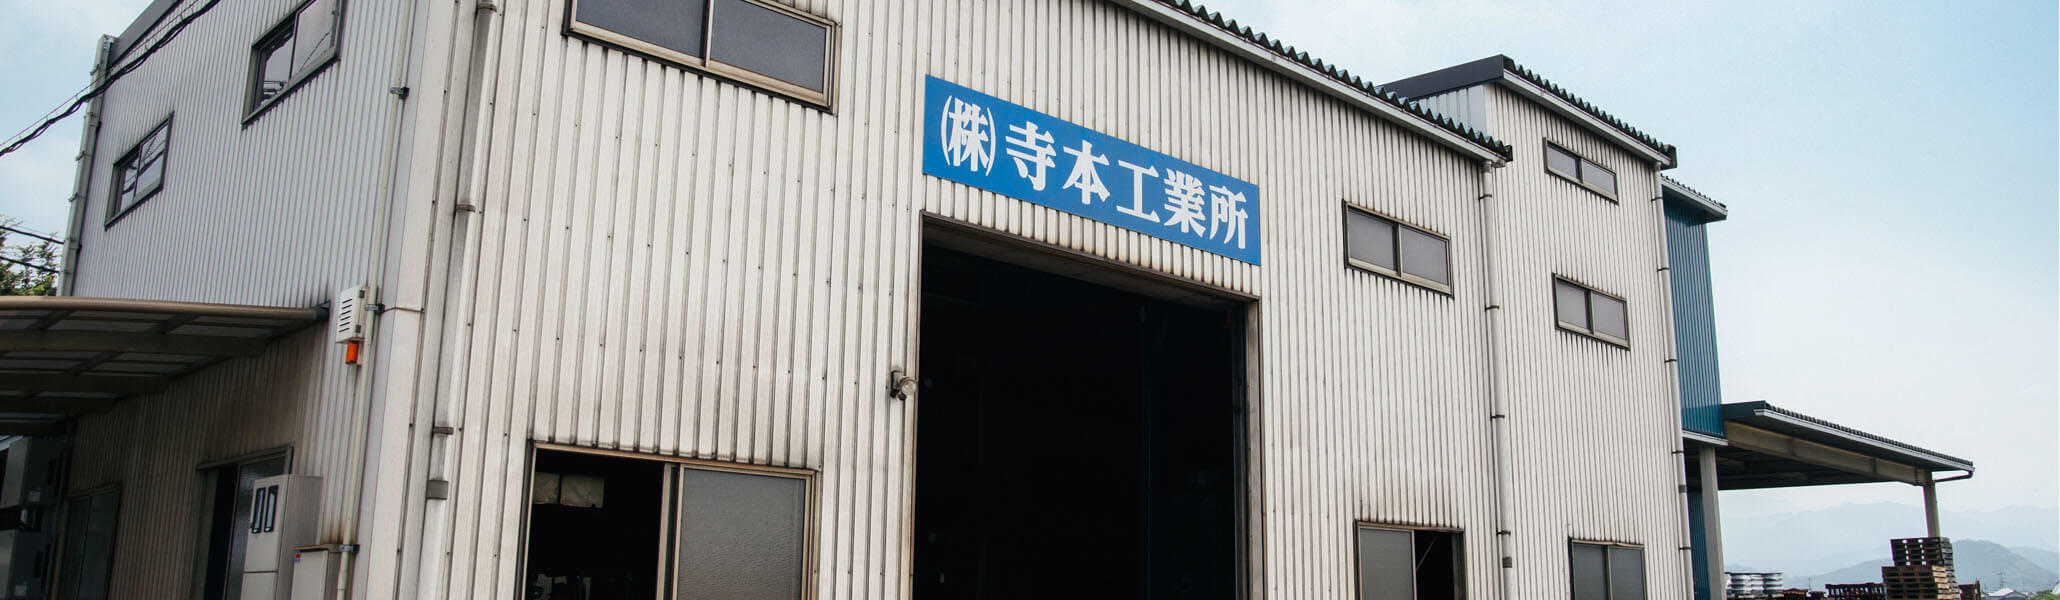 寺本工業所